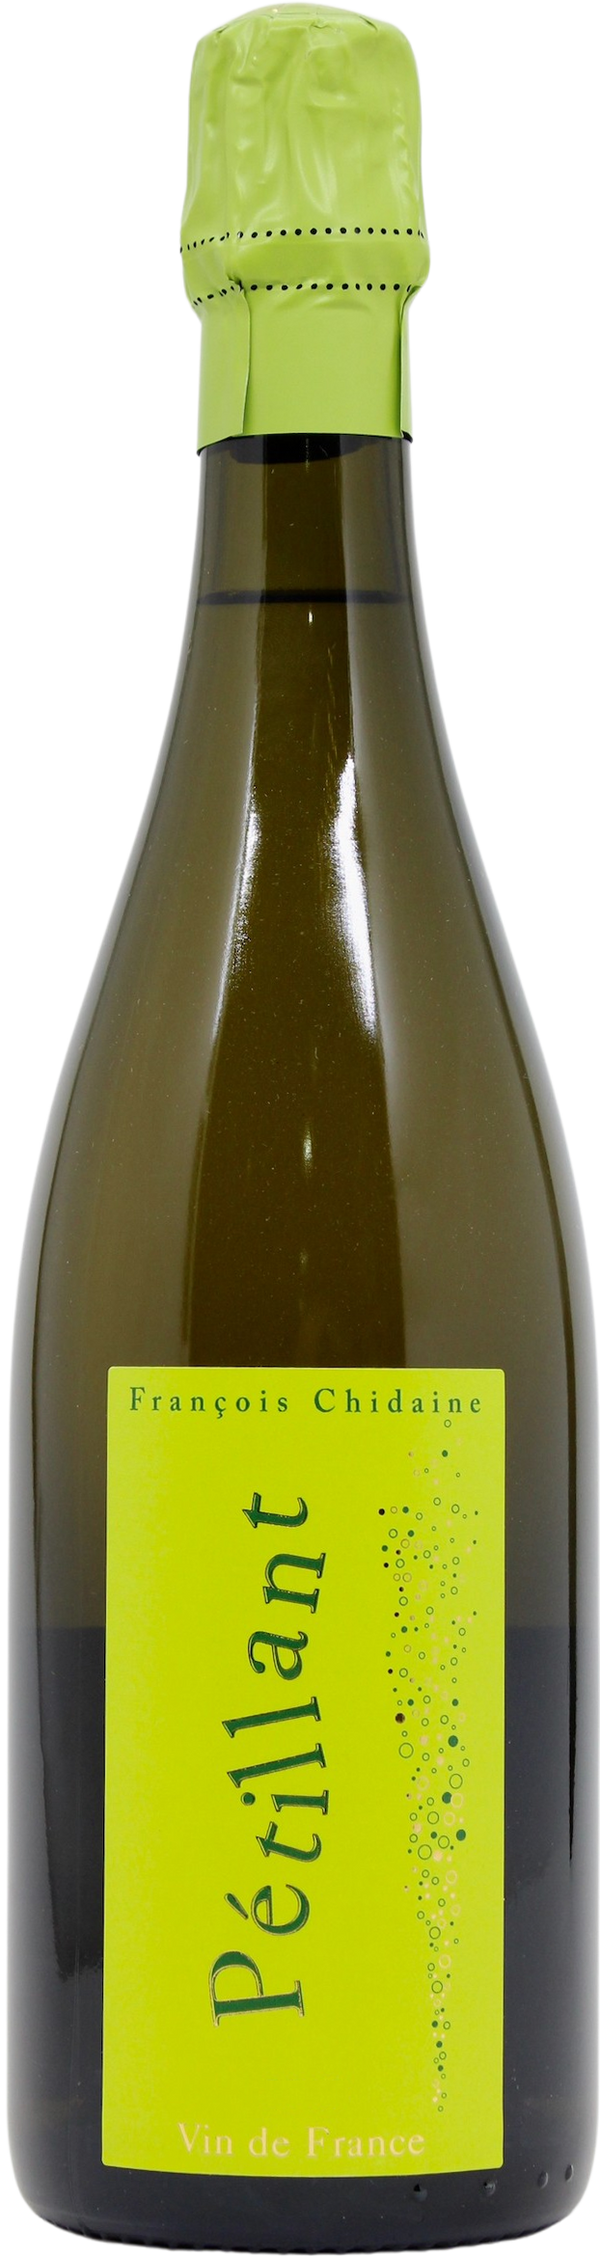 Domaine Francois Chidaine Vin de France Petillant 2019